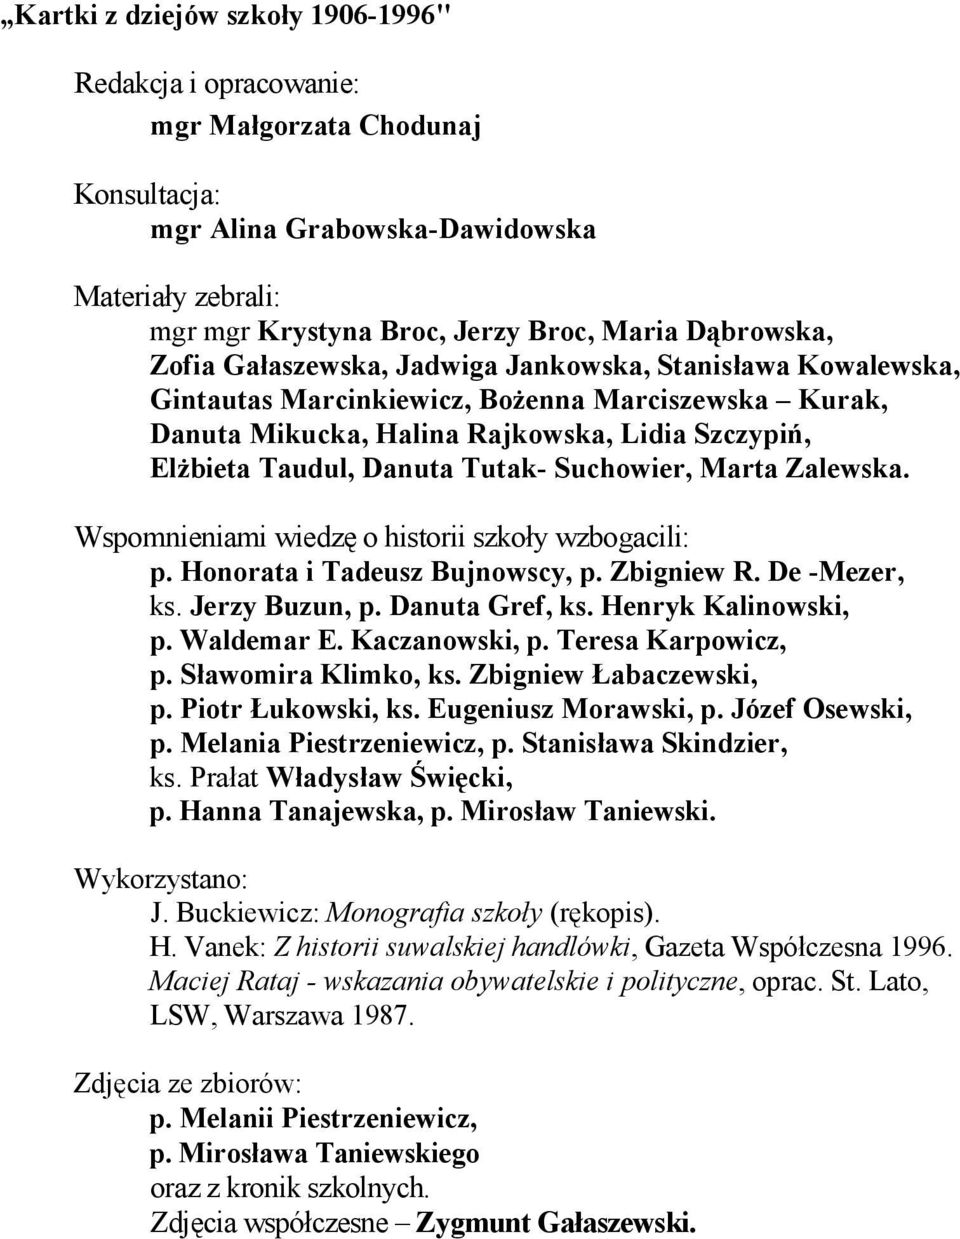 Suchowier, Marta Zalewska. Wspomnieniami wiedzę o historii szkoły wzbogacili: p. Honorata i Tadeusz Bujnowscy, p. Zbigniew R. De -Mezer, ks. Jerzy Buzun, p. Danuta Gref, ks. Henryk Kalinowski, p.